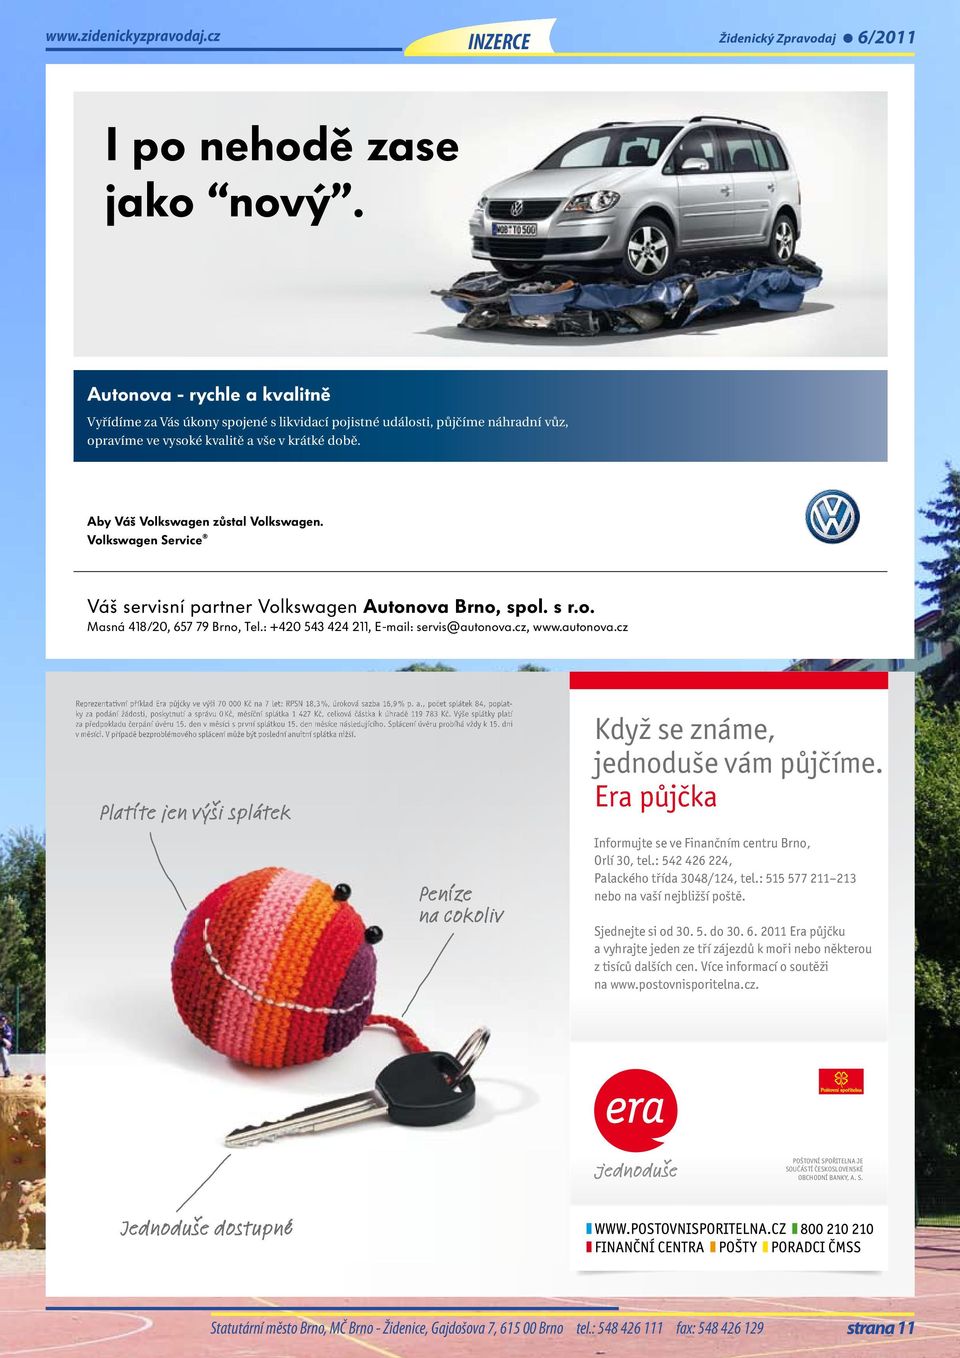 Volkswagen Service Váš servisní partner Volkswagen Autonova Brno, spol. s r.o. Masná 418/20, 657 79 Brno, Tel.: +420 543 424 211, E-mail: servis@autonova.